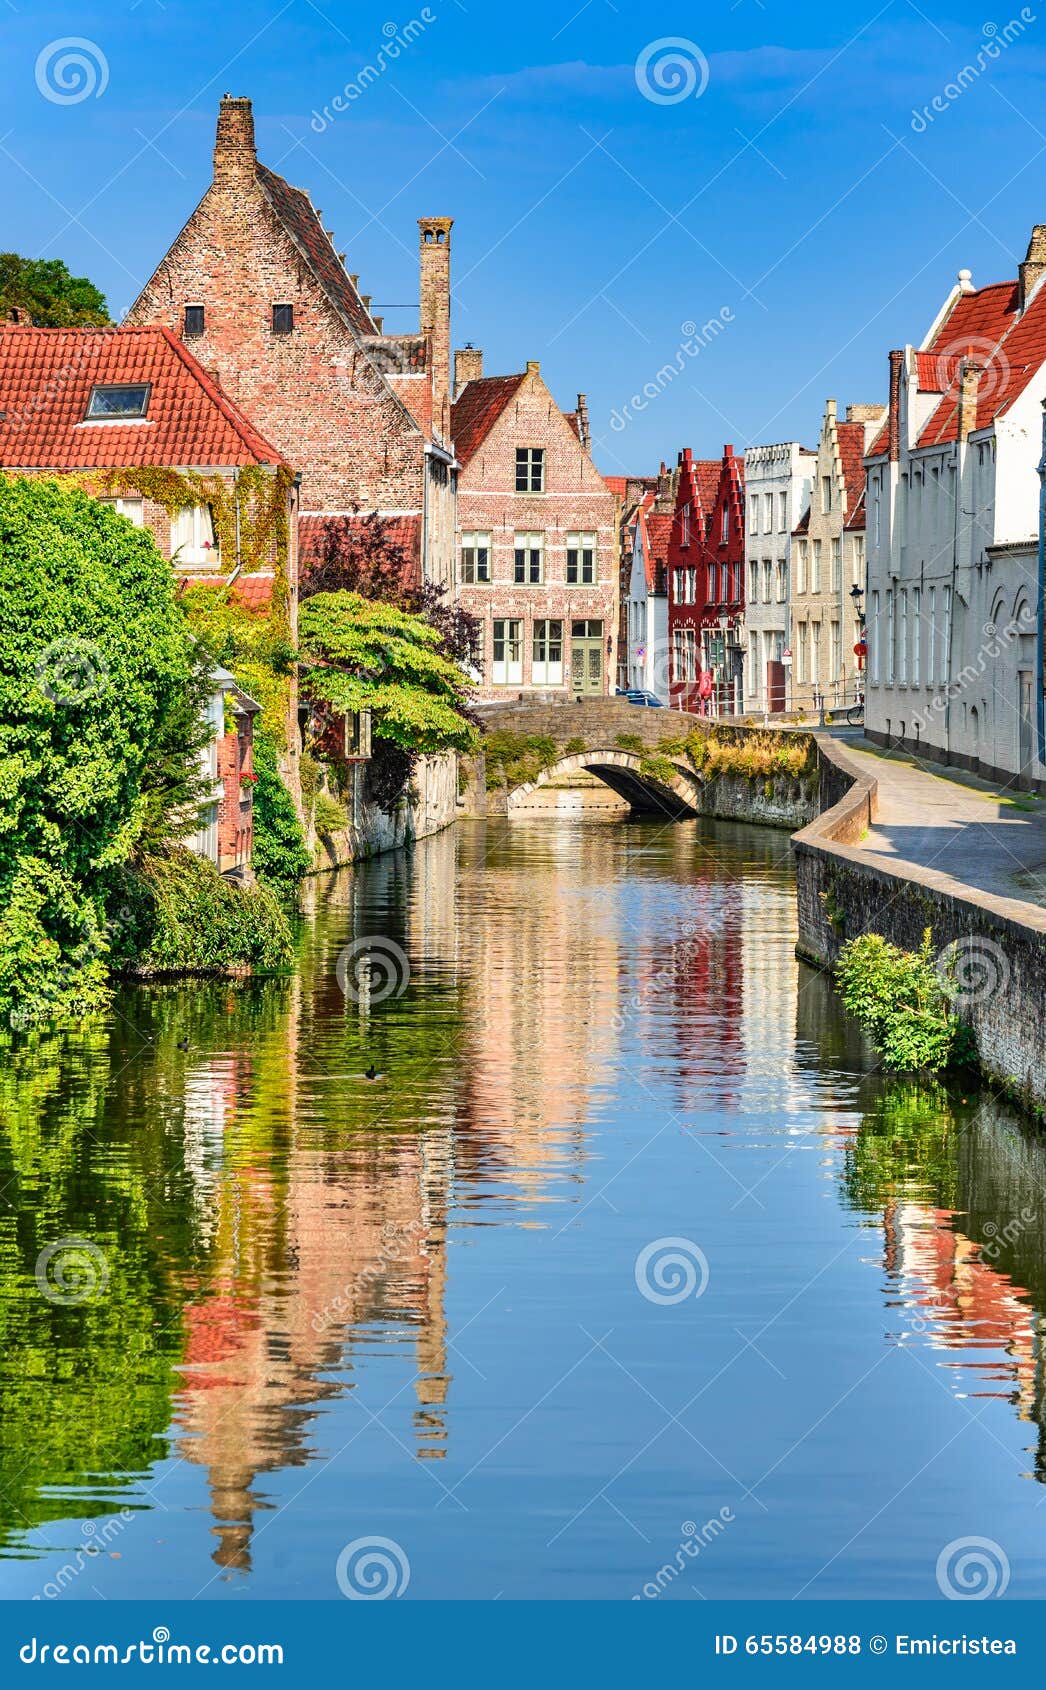 bruges canal, belgium